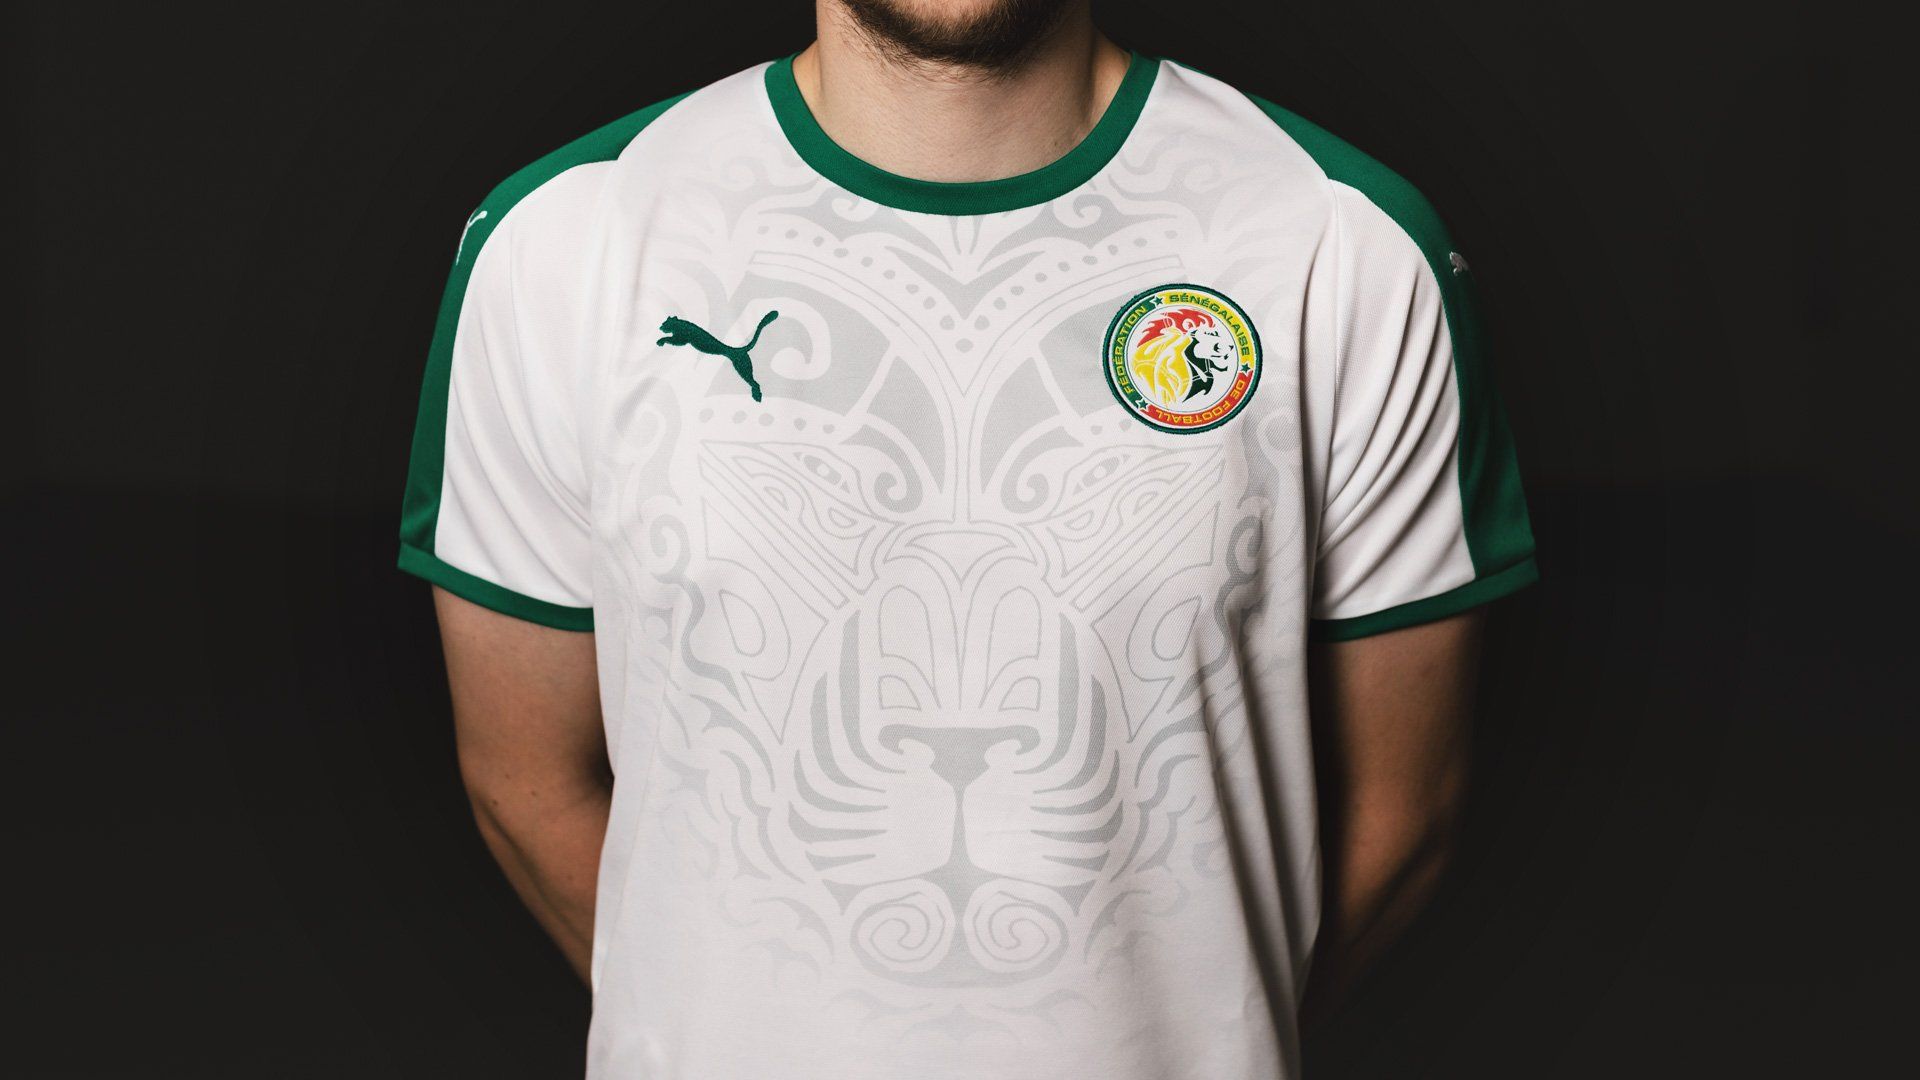 PUMA dévoile le maillot du Sénégal pour la Coupe du Monde 2018 !